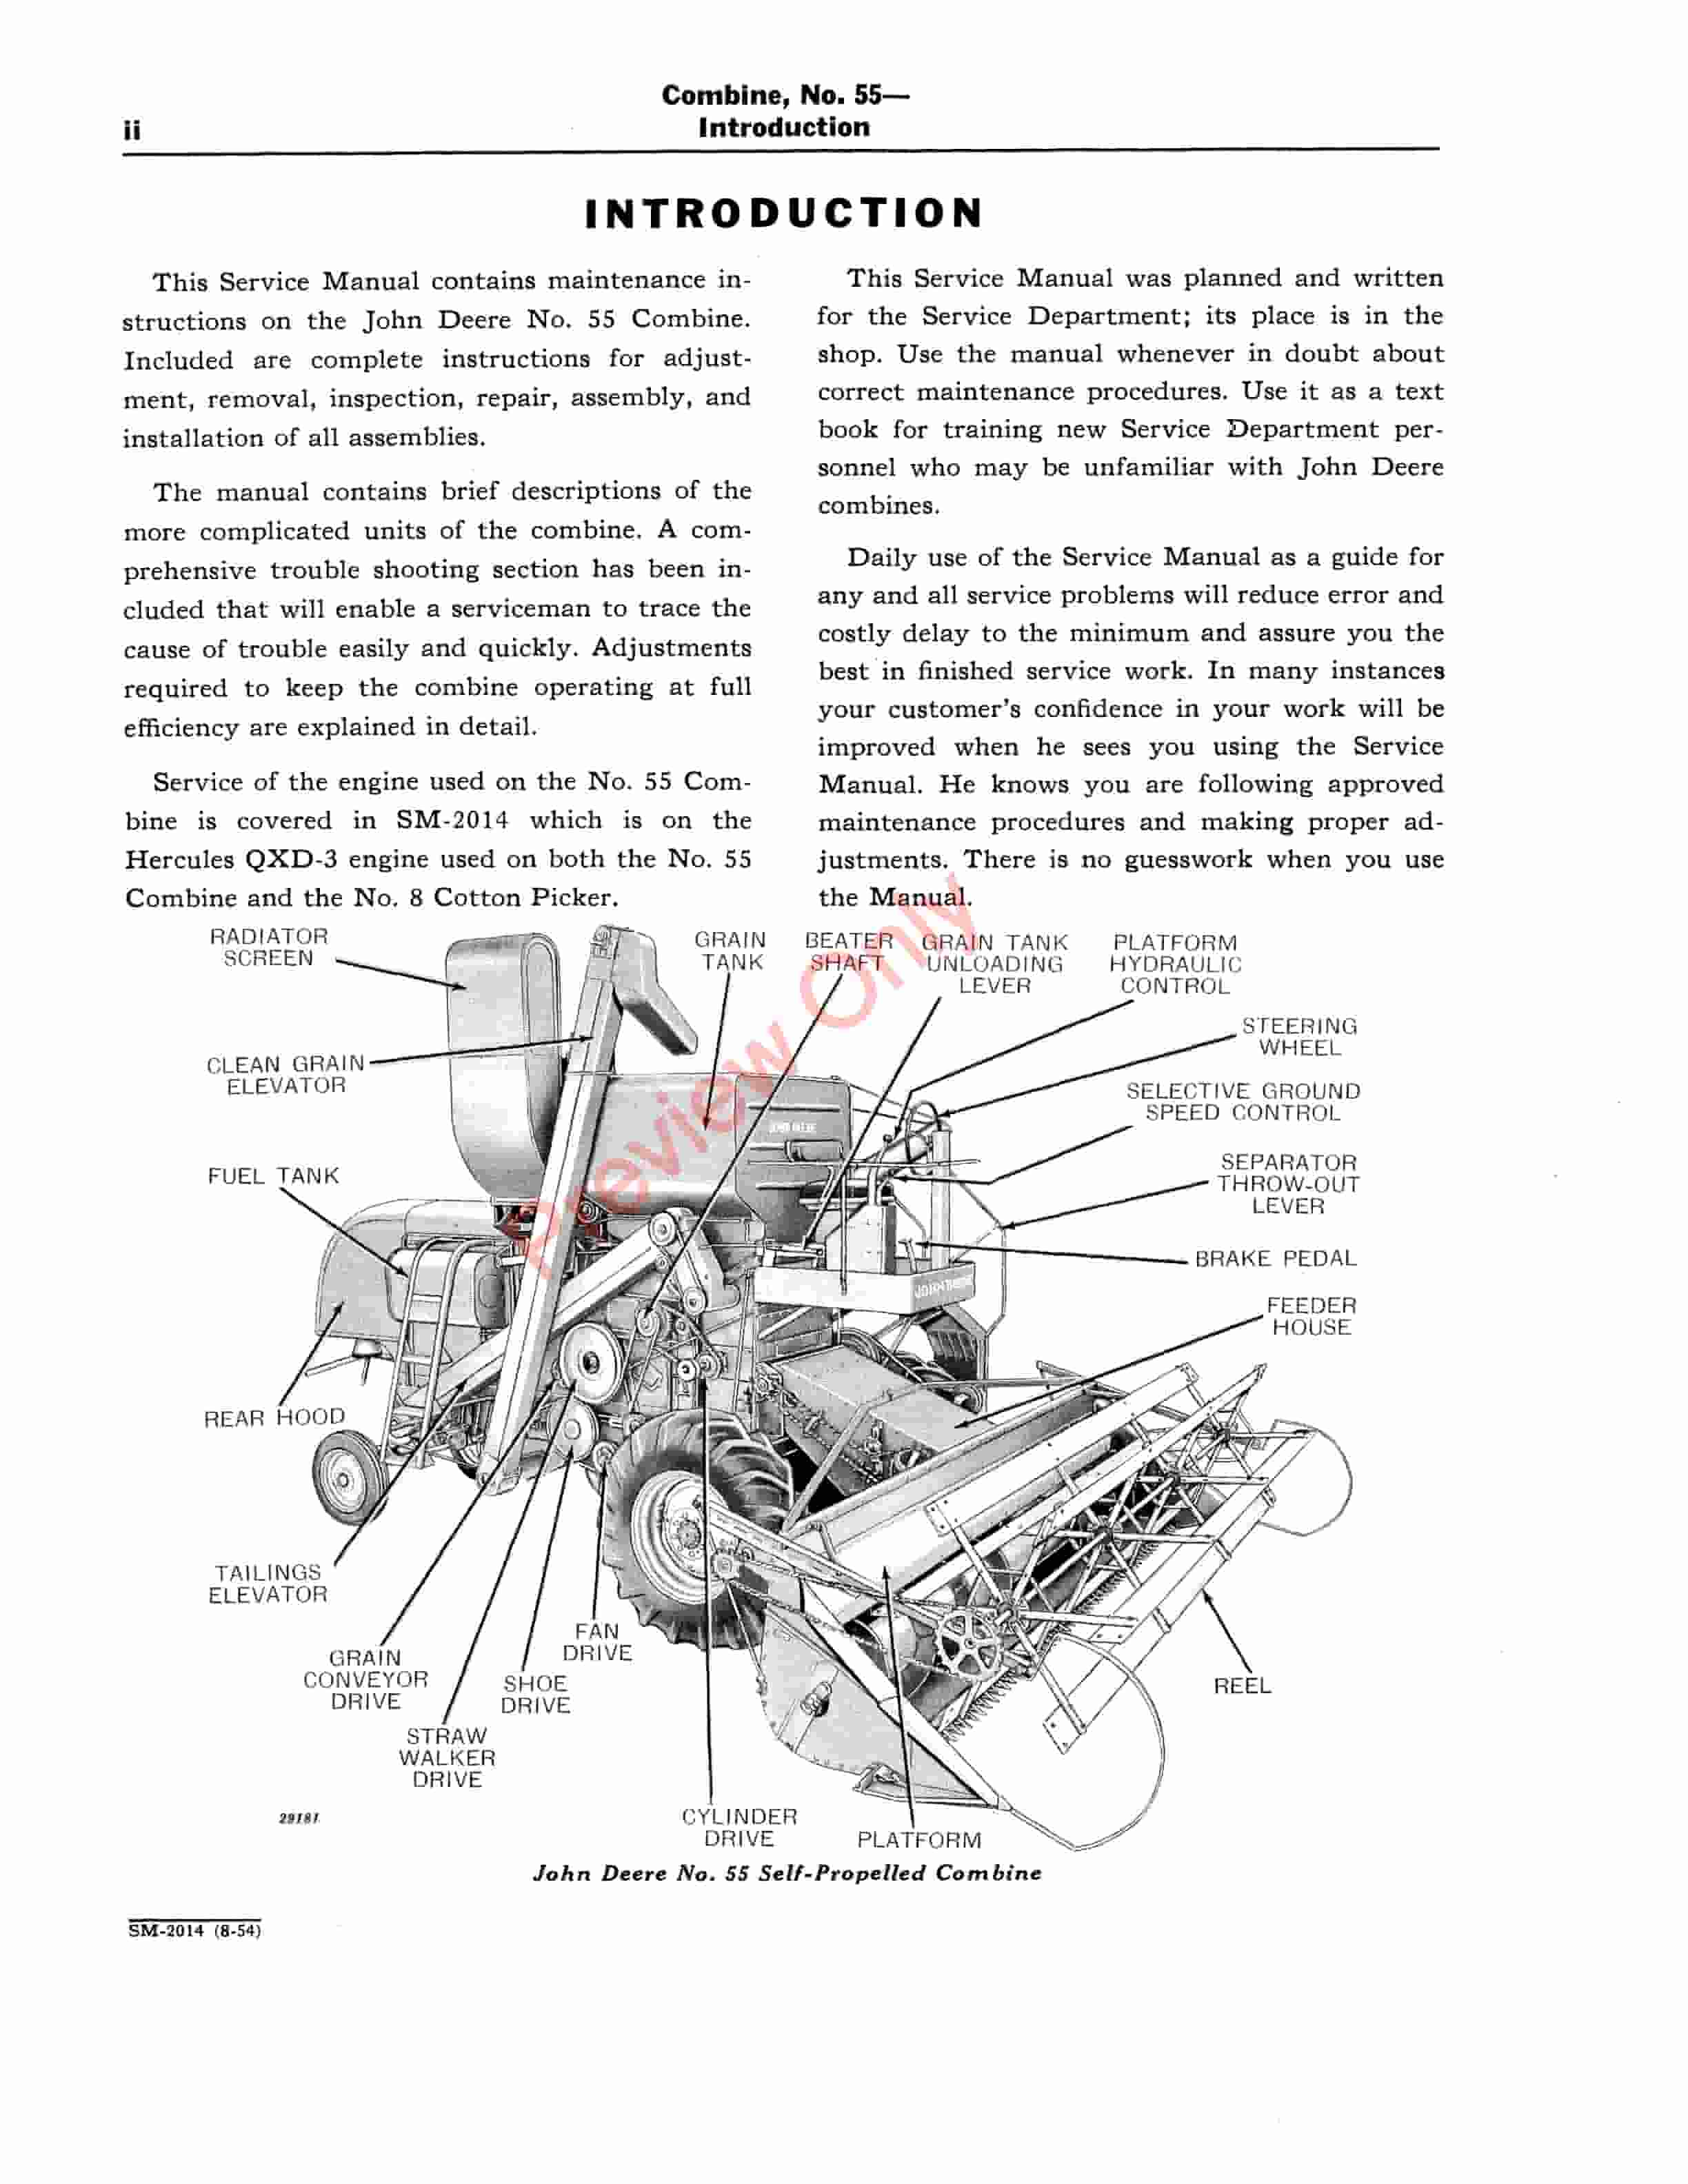 John Deere 55 Combine Service Manual SM2014 01AUG54-4